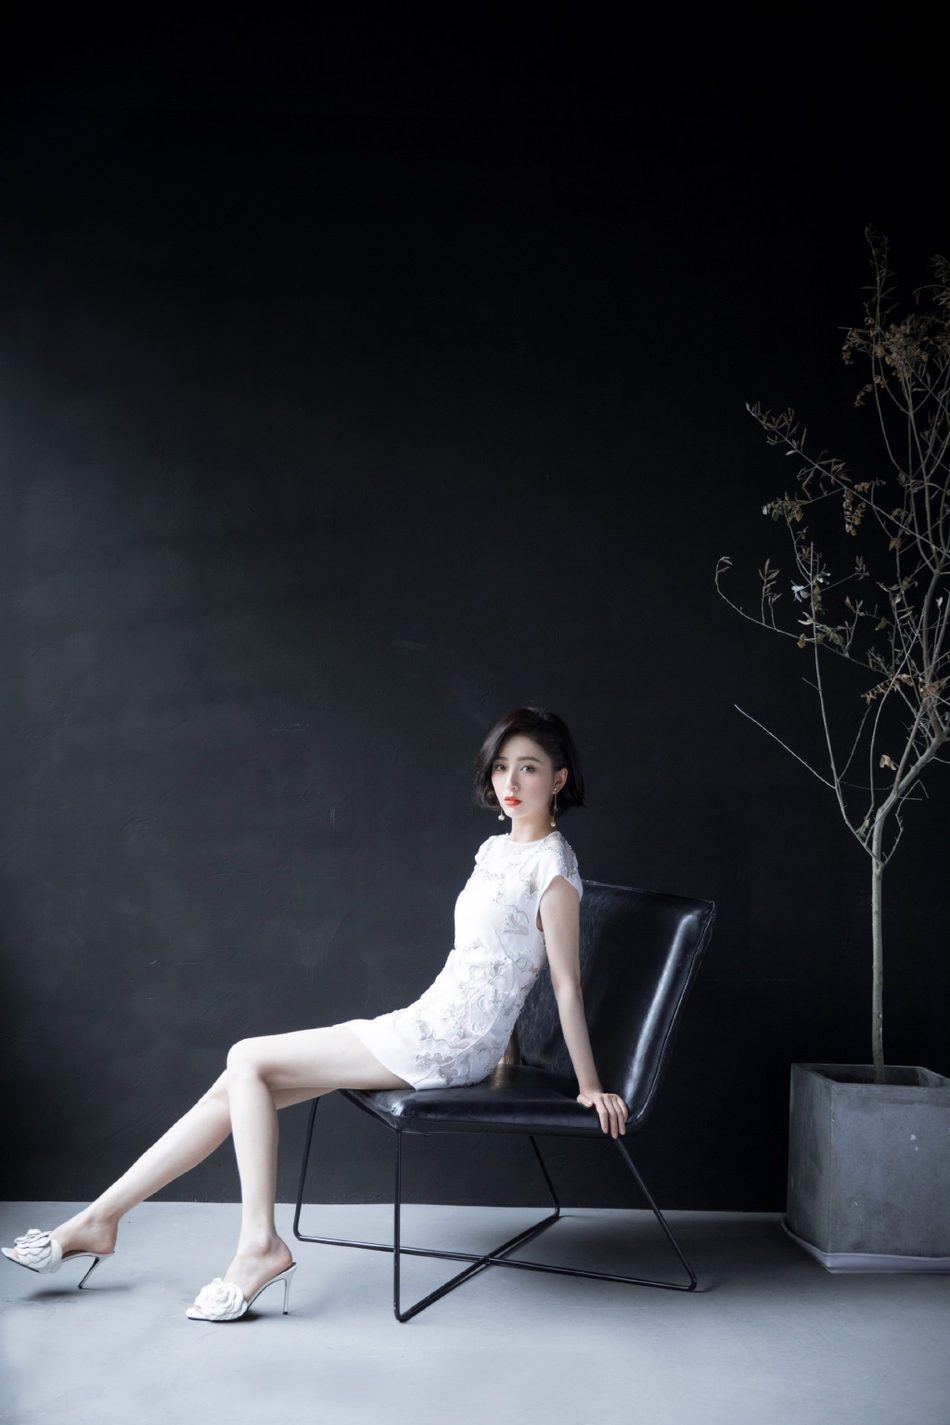 佟丽娅刺绣白裙气质清雅写真美照  第7张